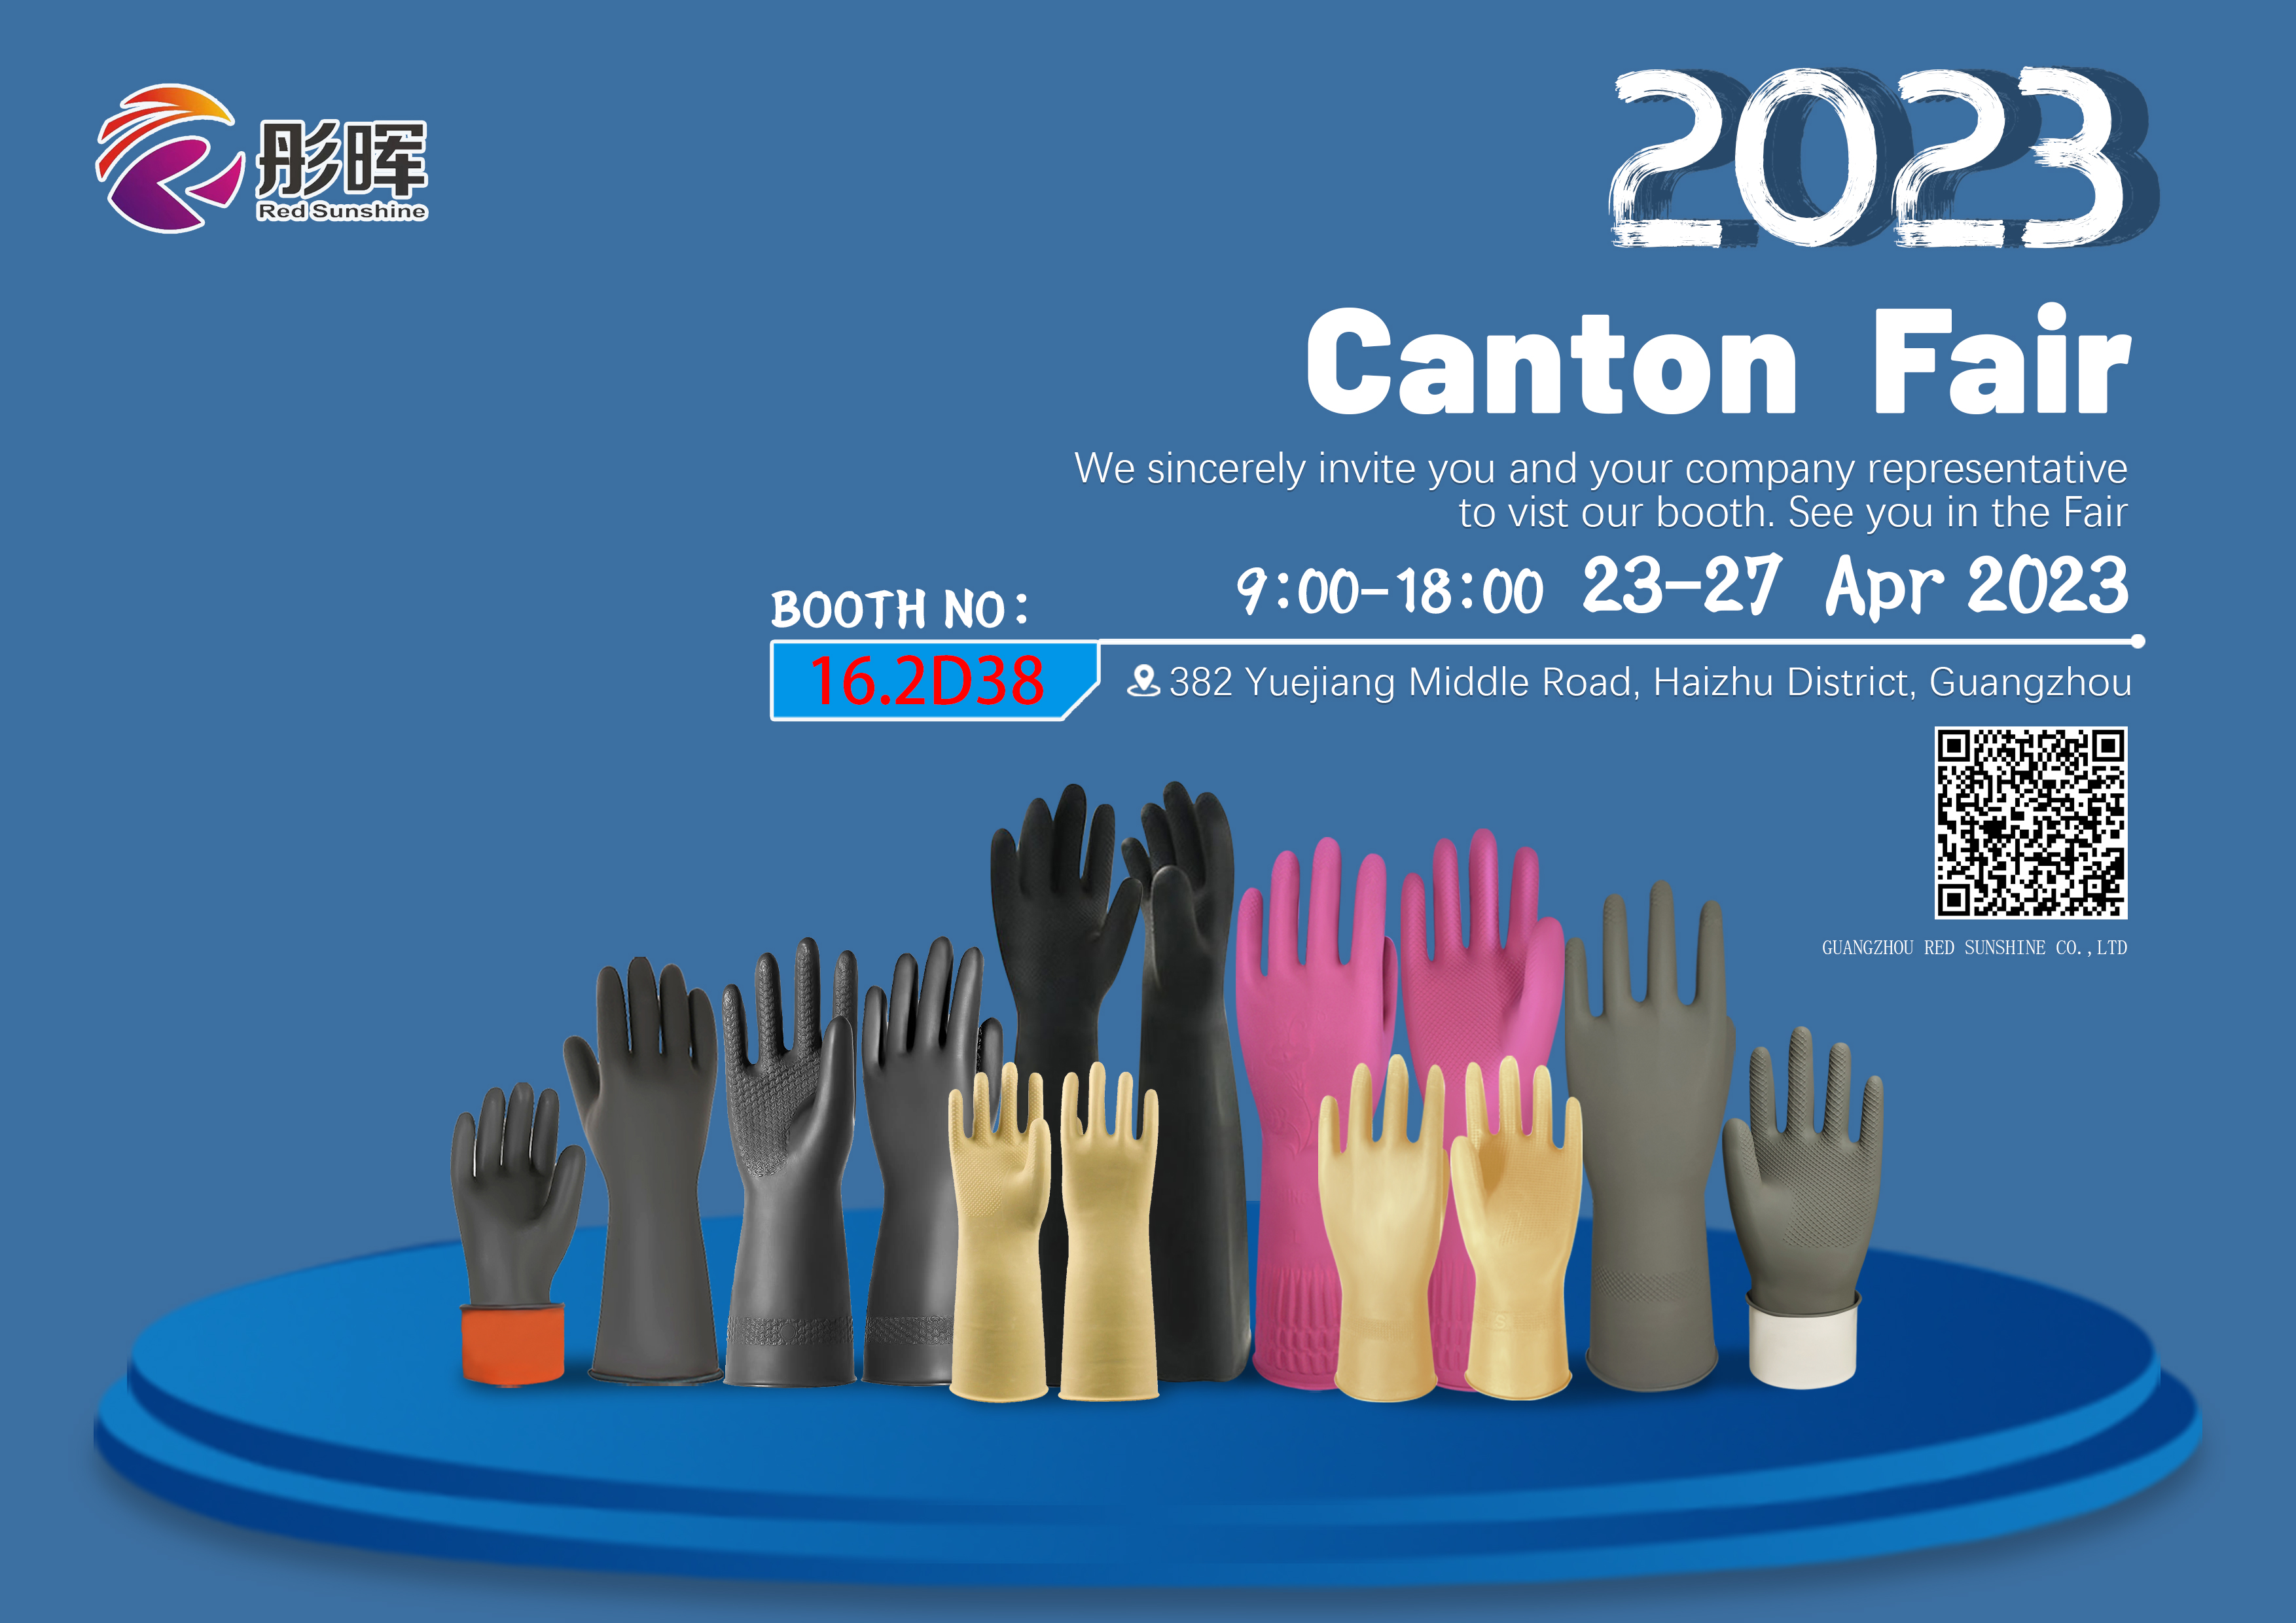 The 133rd Offline Canton Fair in 2023